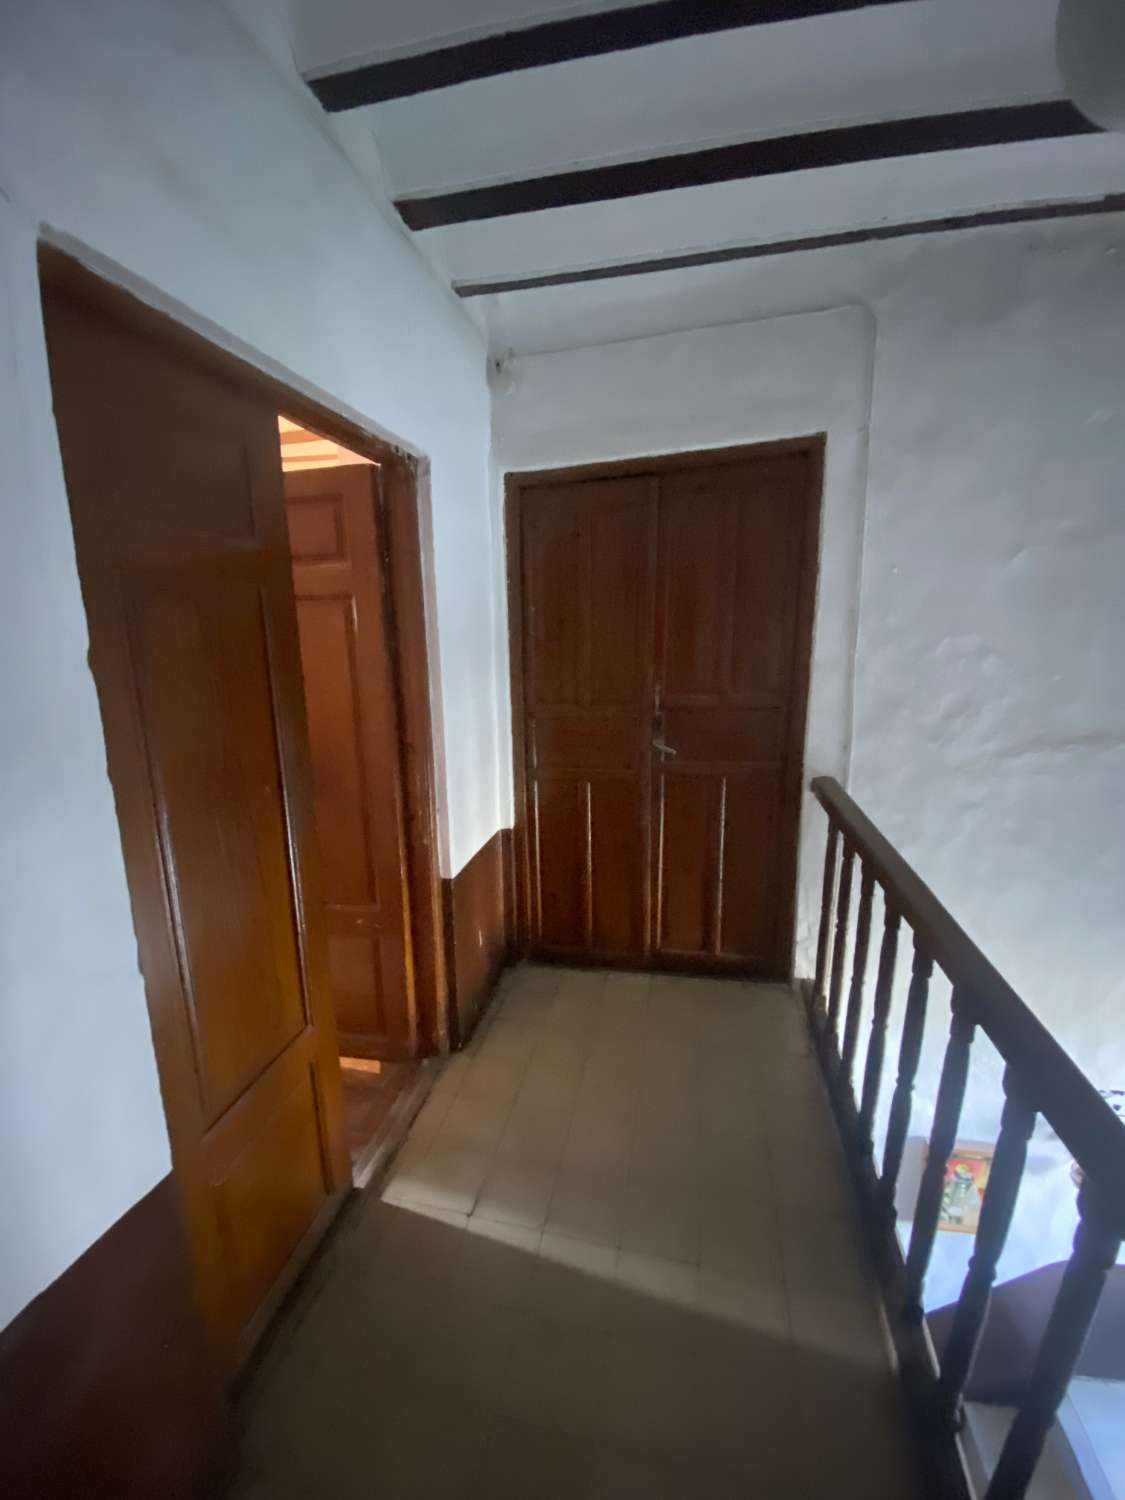 Casa de 9 dormitorios y 2 baños para reformar en Vélez-Rubio